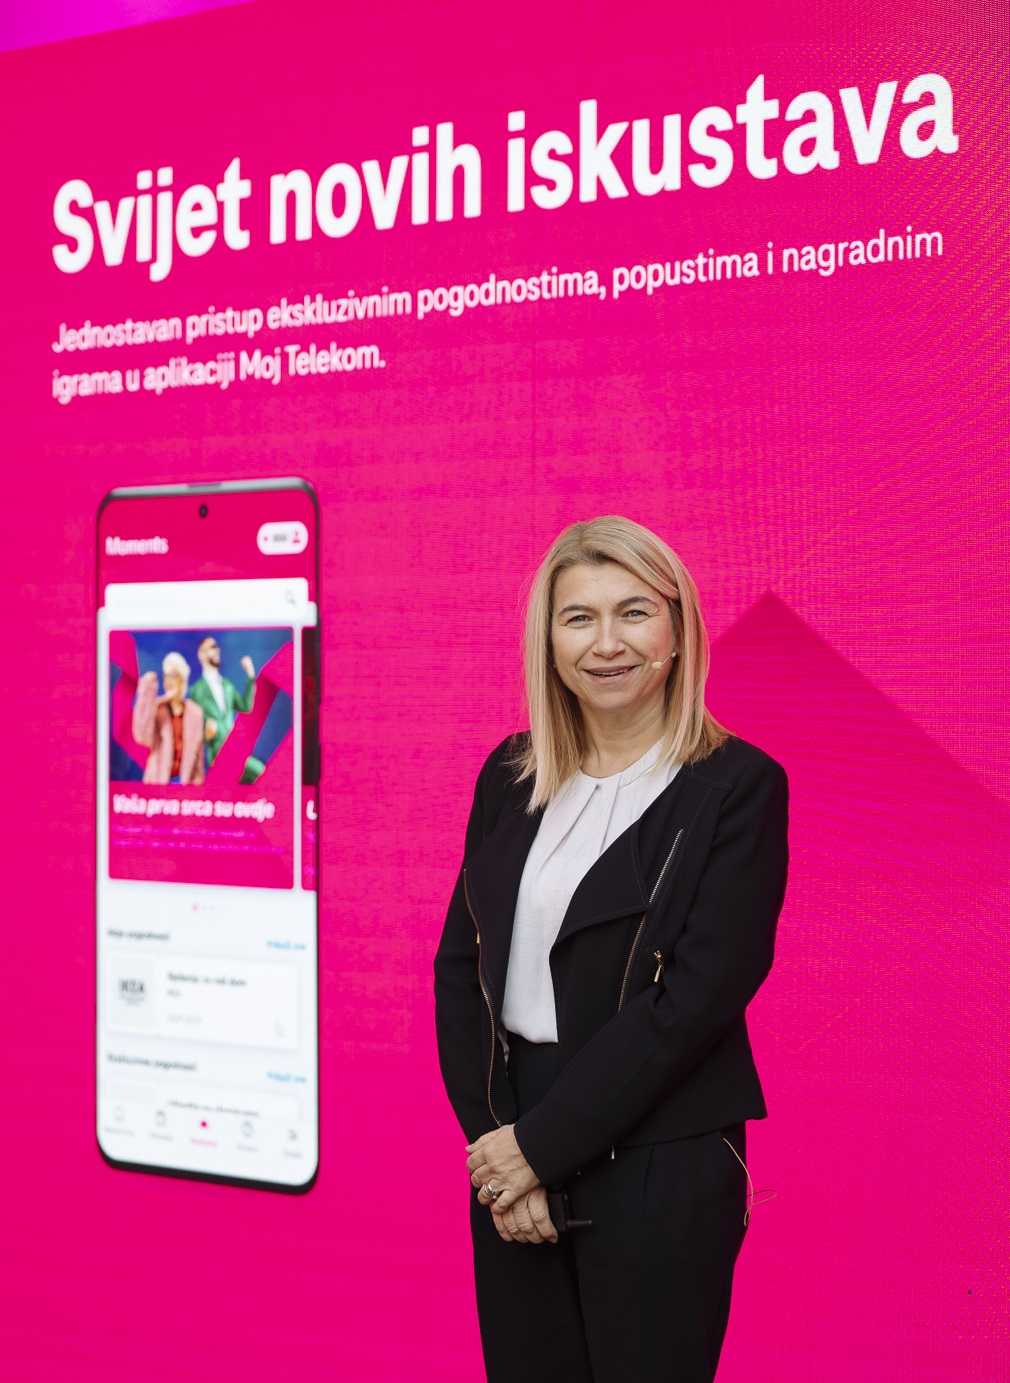 Hrvatski Telekom pokrenuo Magenta Moments, jedinstveni međunarodni program pogodnosti